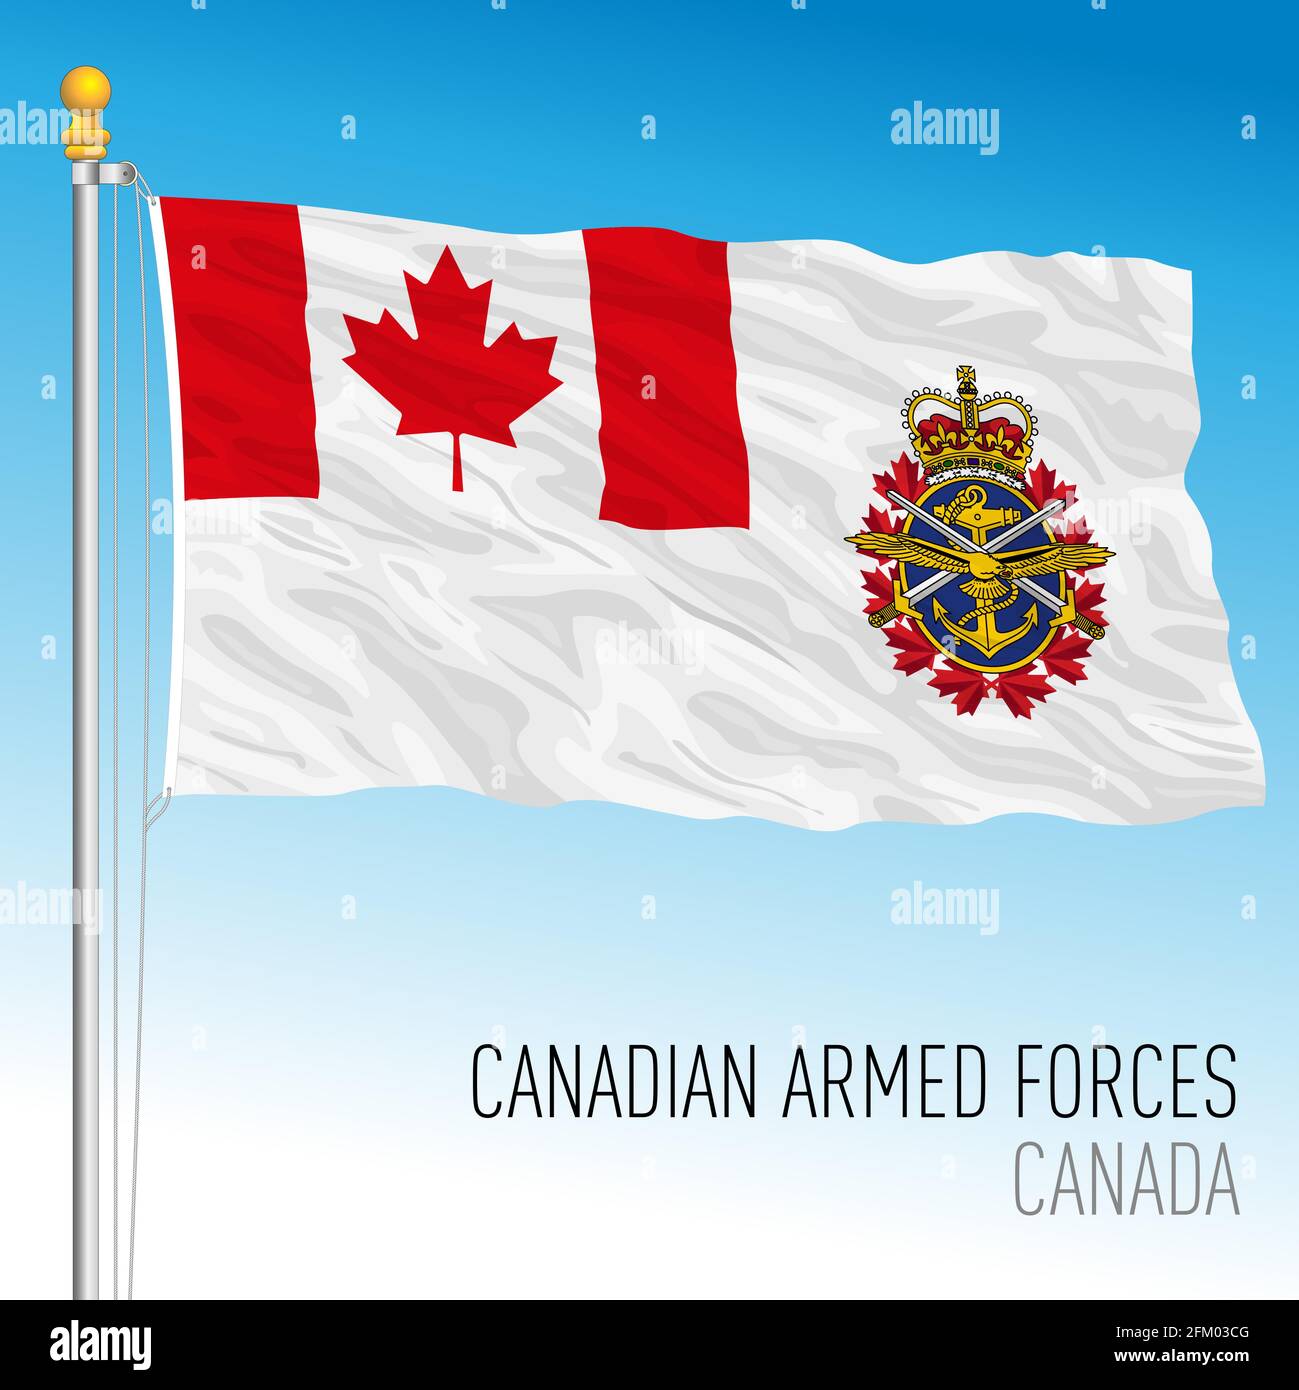 Flagge der kanadischen Streitkräfte, Kanada, nordamerikanisches Land, Vektorgrafik Stock Vektor